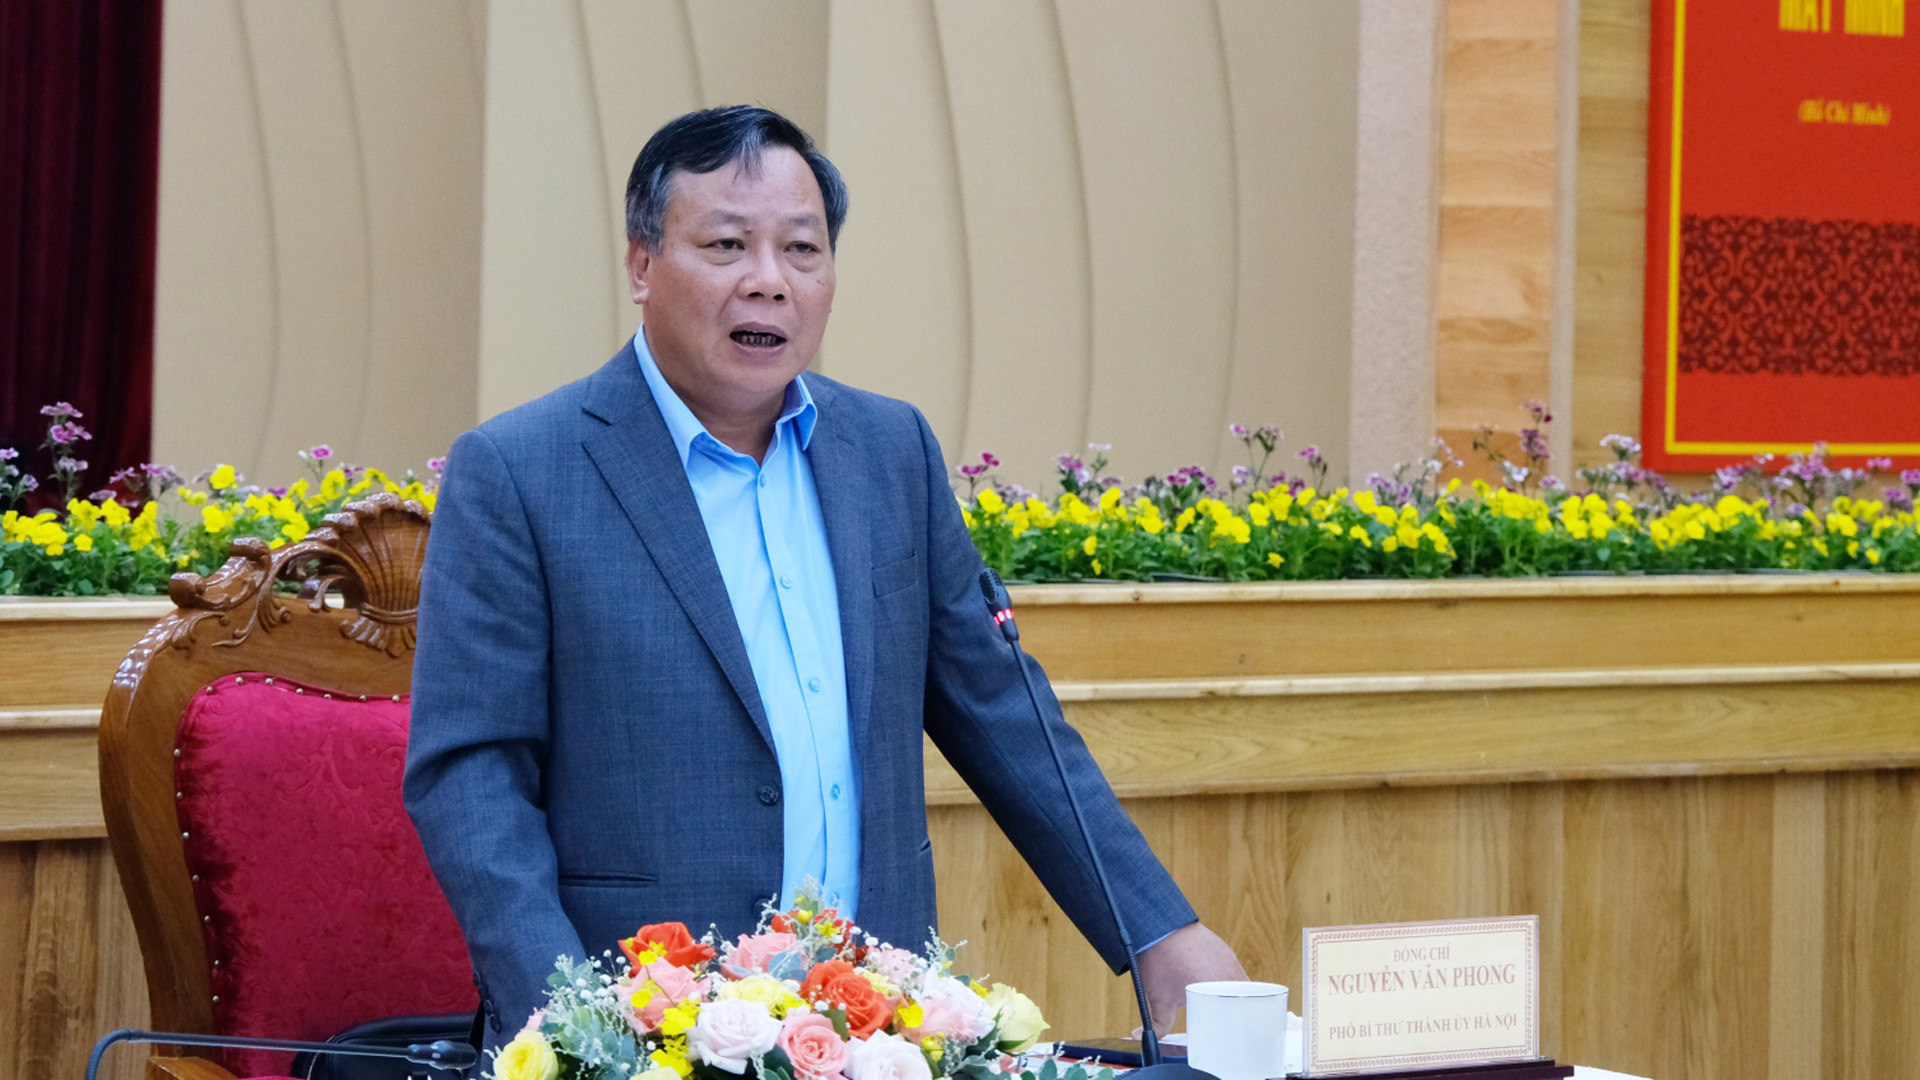 Đồng chí Nguyễn Văn Phong - Phó Bí thư Thành ủy Hà Nội phát biểu tại hội nghị